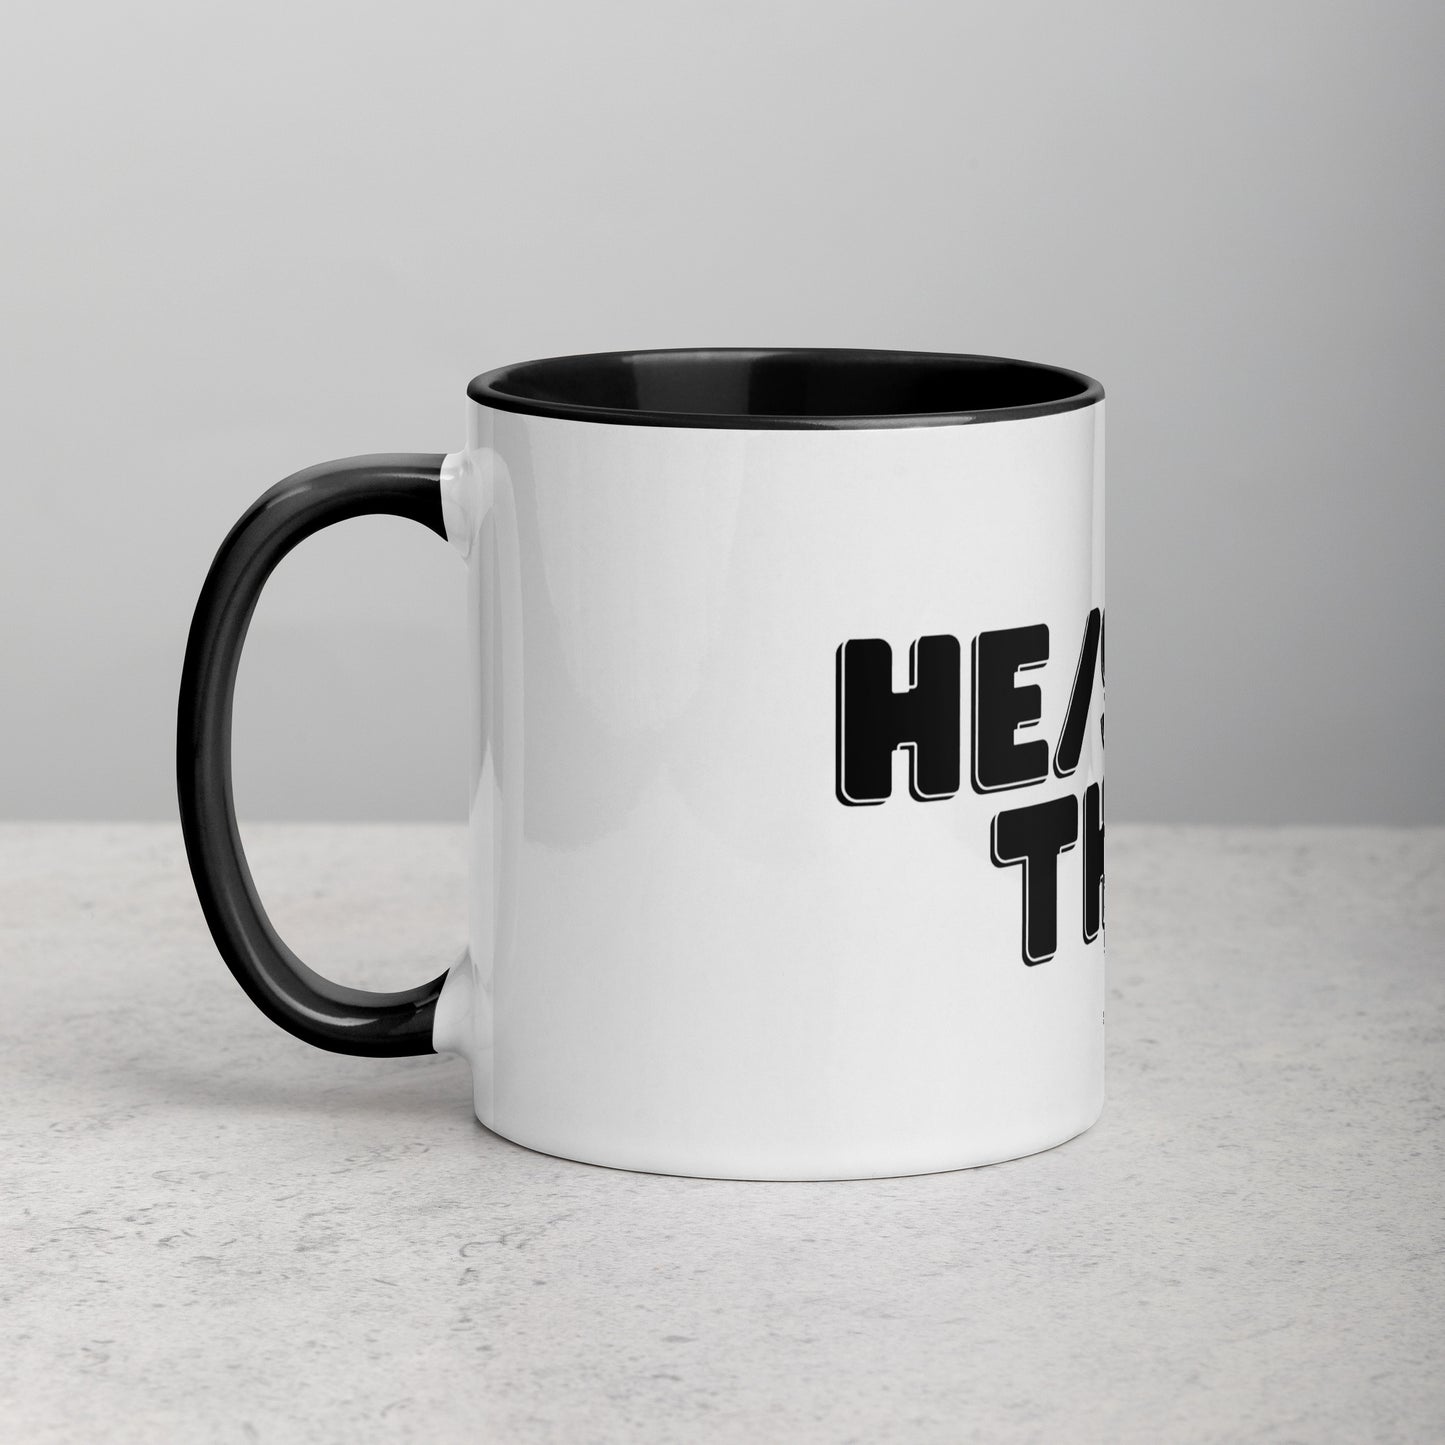 He/She/They Mug